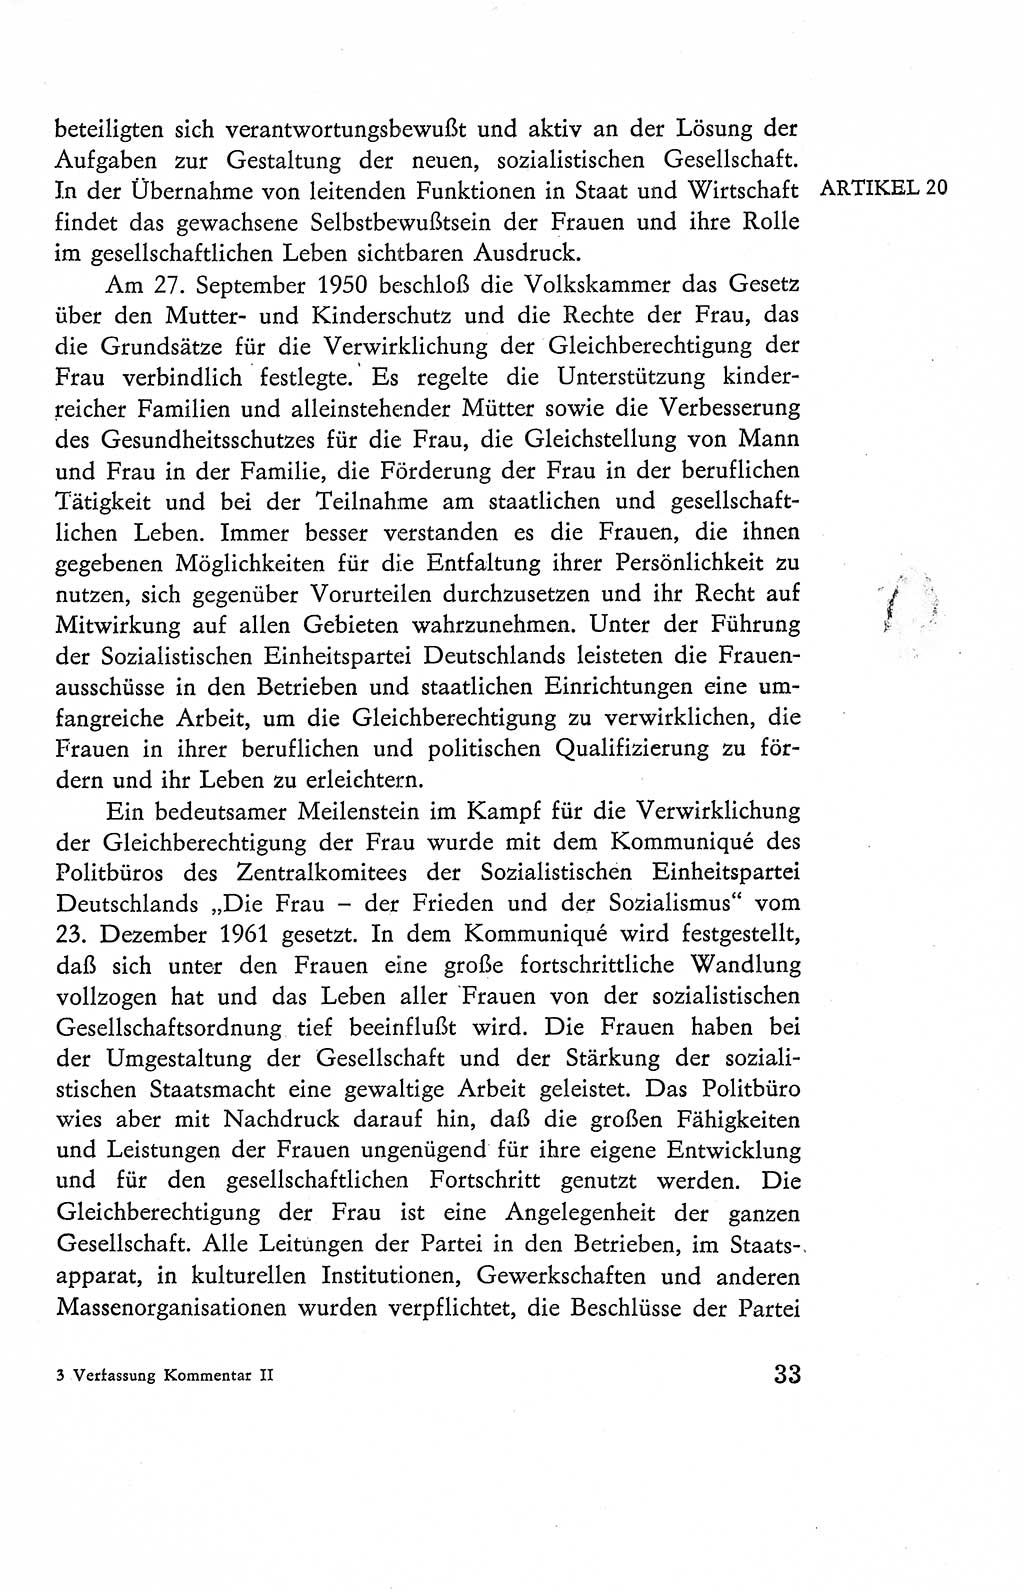 Verfassung der Deutschen Demokratischen Republik (DDR), Dokumente, Kommentar 1969, Band 2, Seite 33 (Verf. DDR Dok. Komm. 1969, Bd. 2, S. 33)